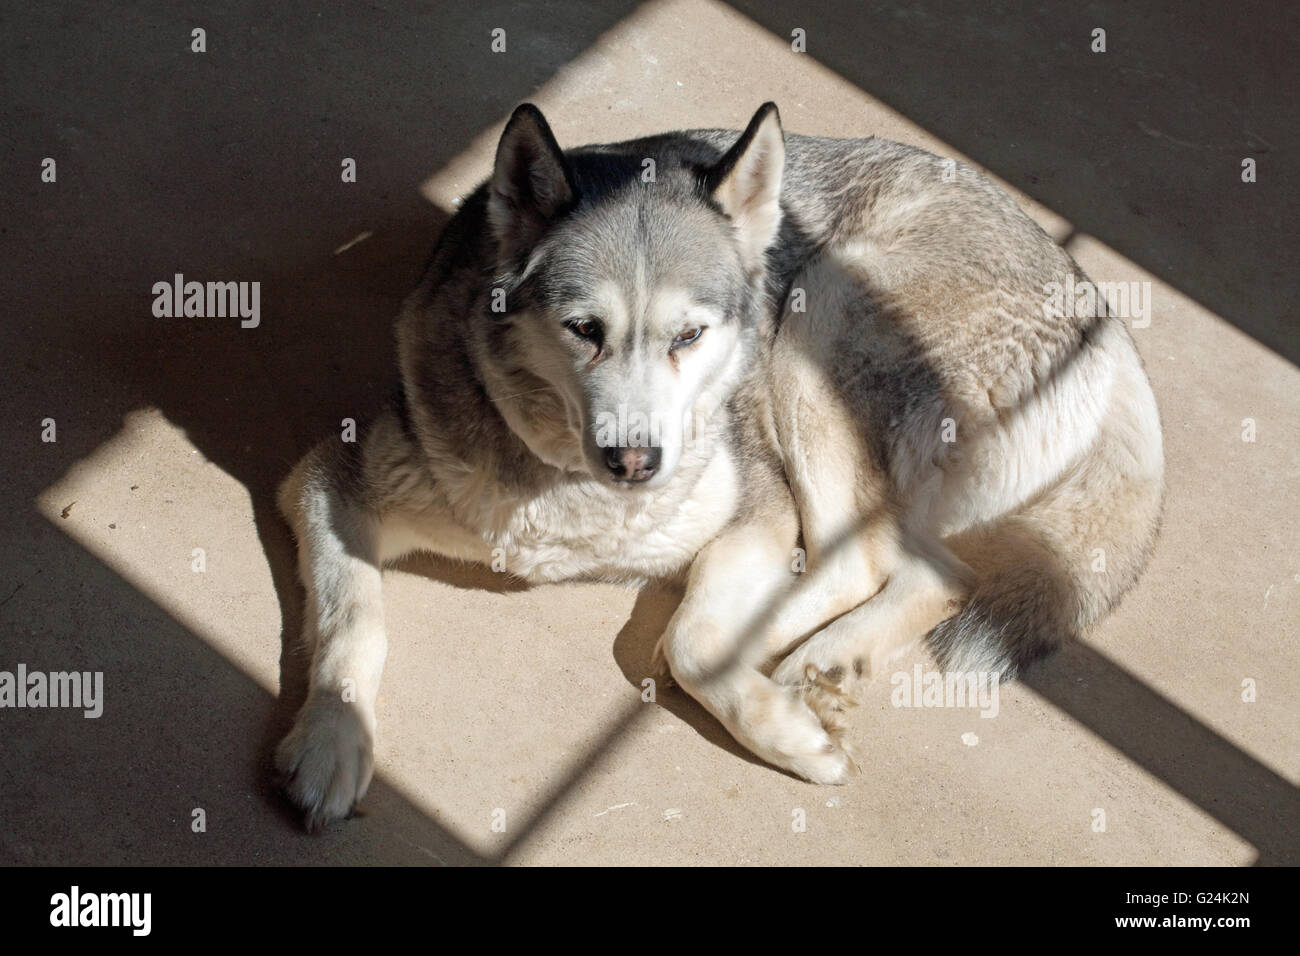 Hund, ein Siberian Husky Canis Lupus Familiaris, die Wärme der Sonne scheint durch einen Fensterrahmen auf einen Betonboden suchen Stockfoto